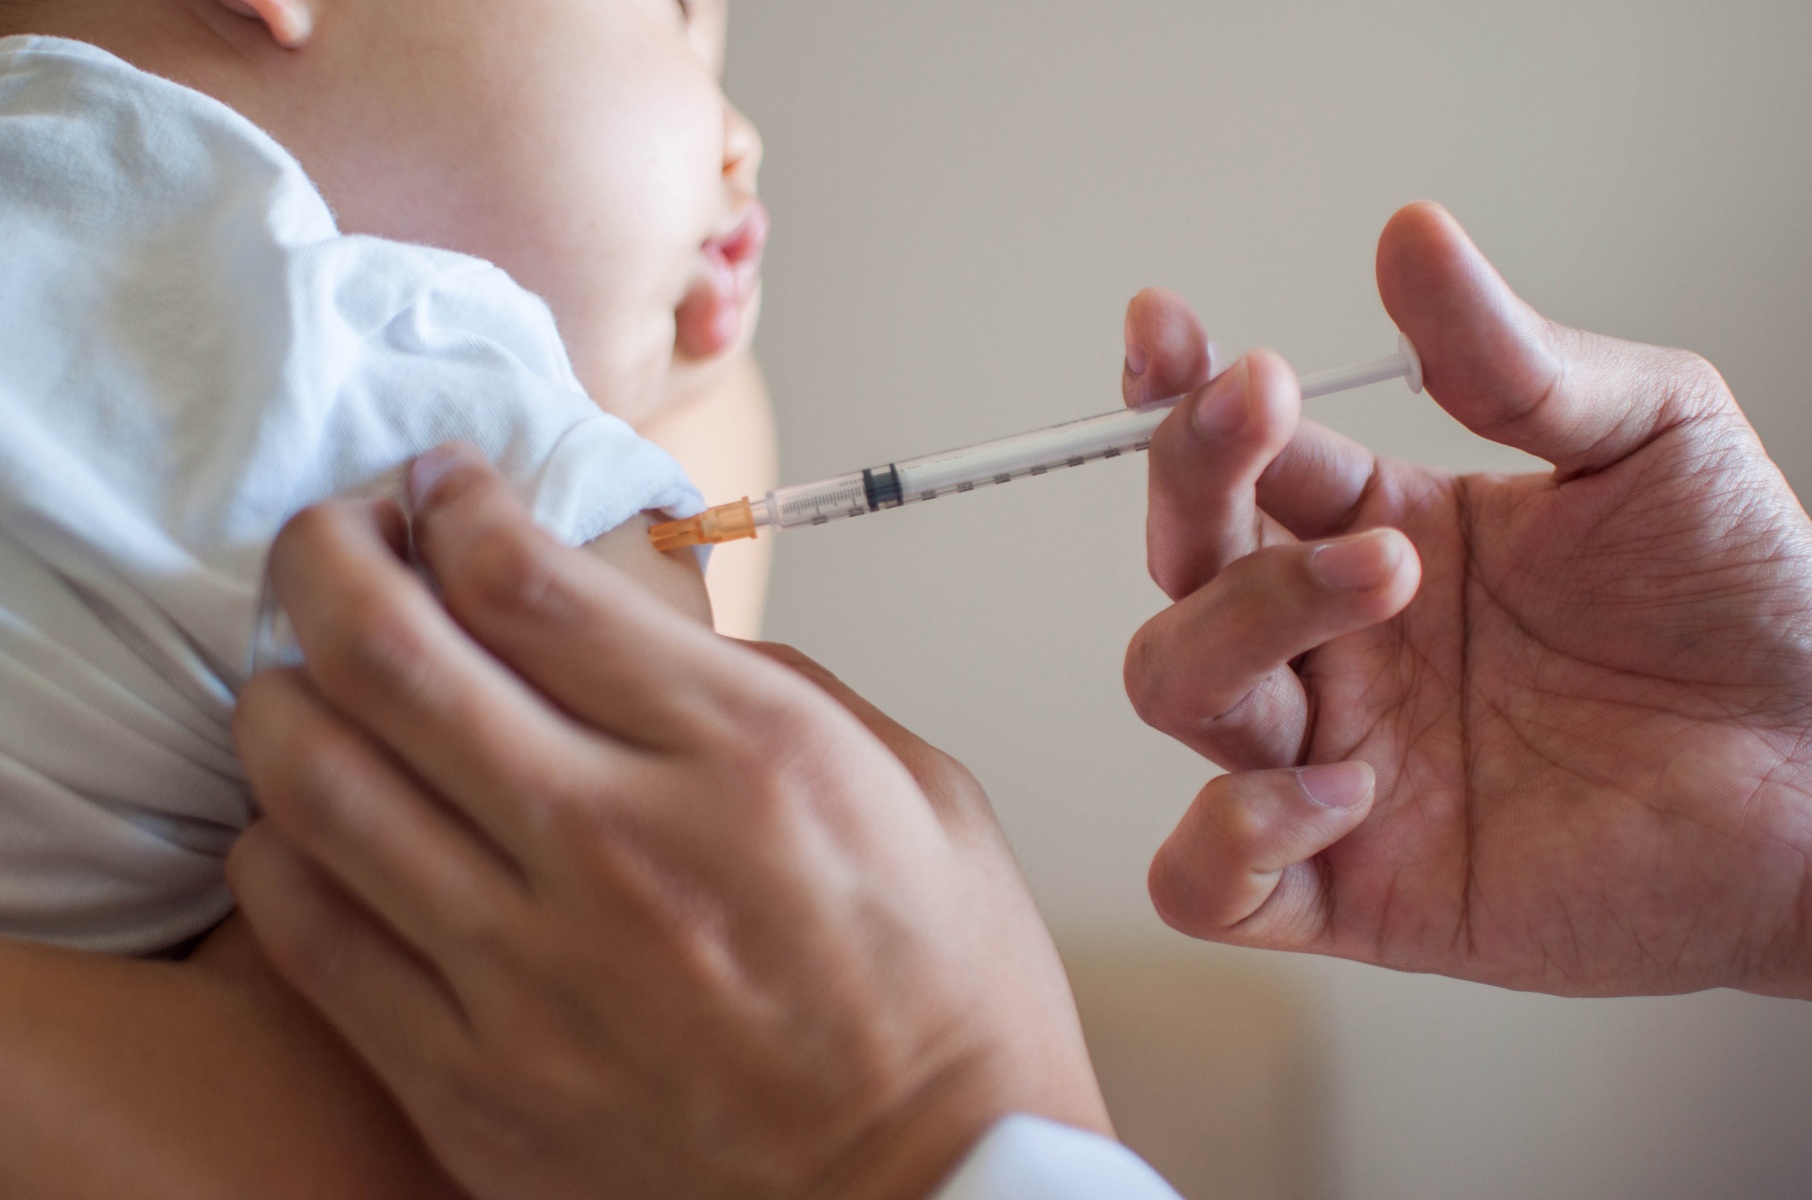 واکسن زدن نوزاد